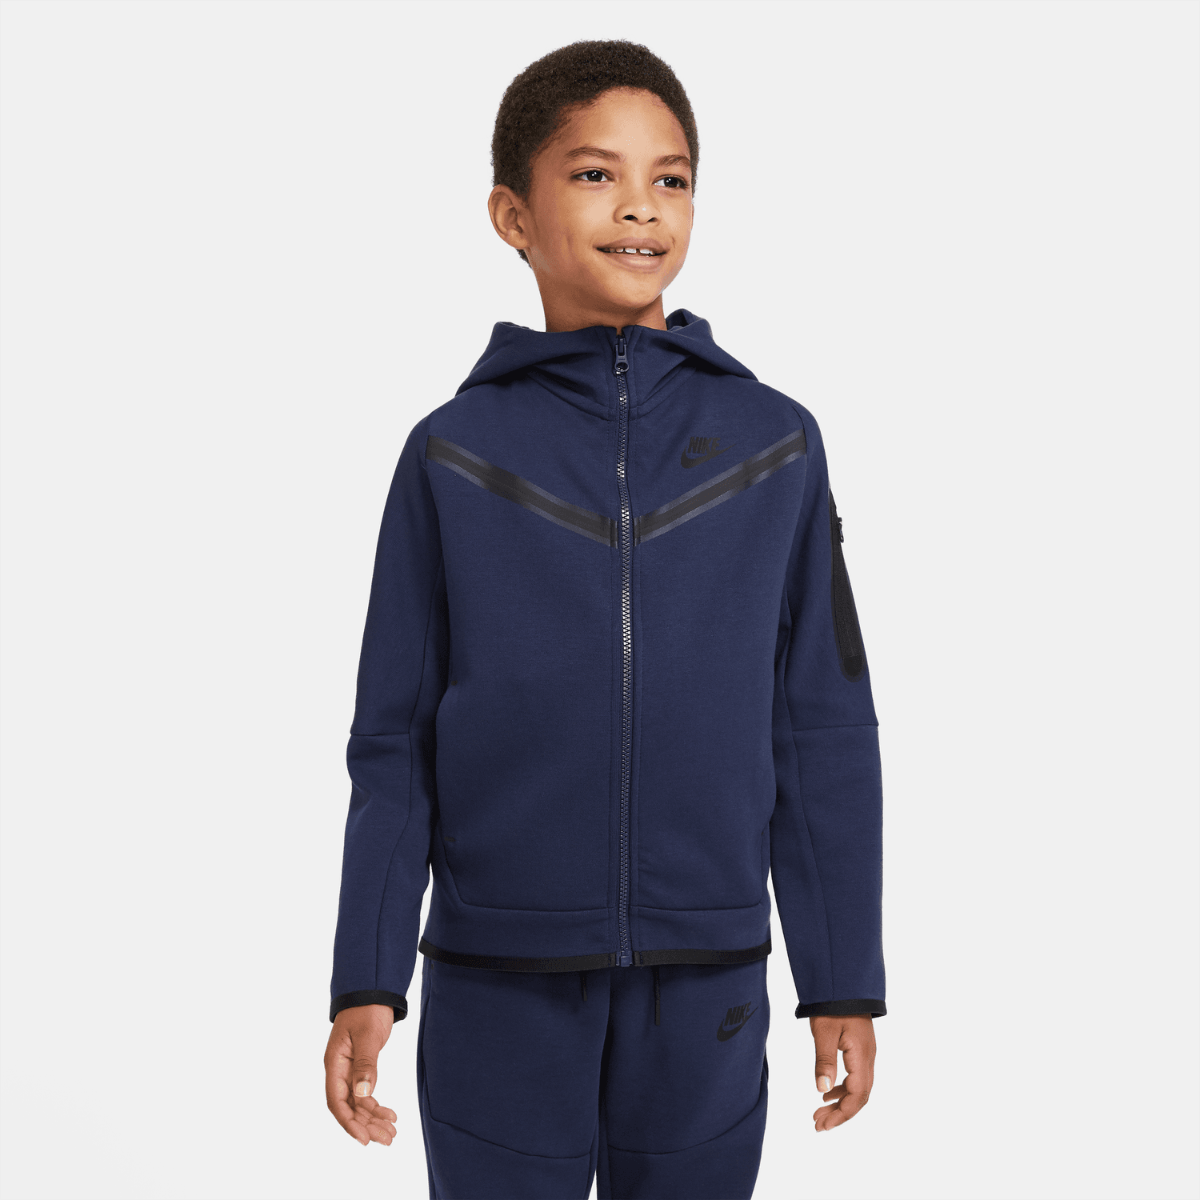 Giacca Nike Tech Fleece Junior - Blu/Nero